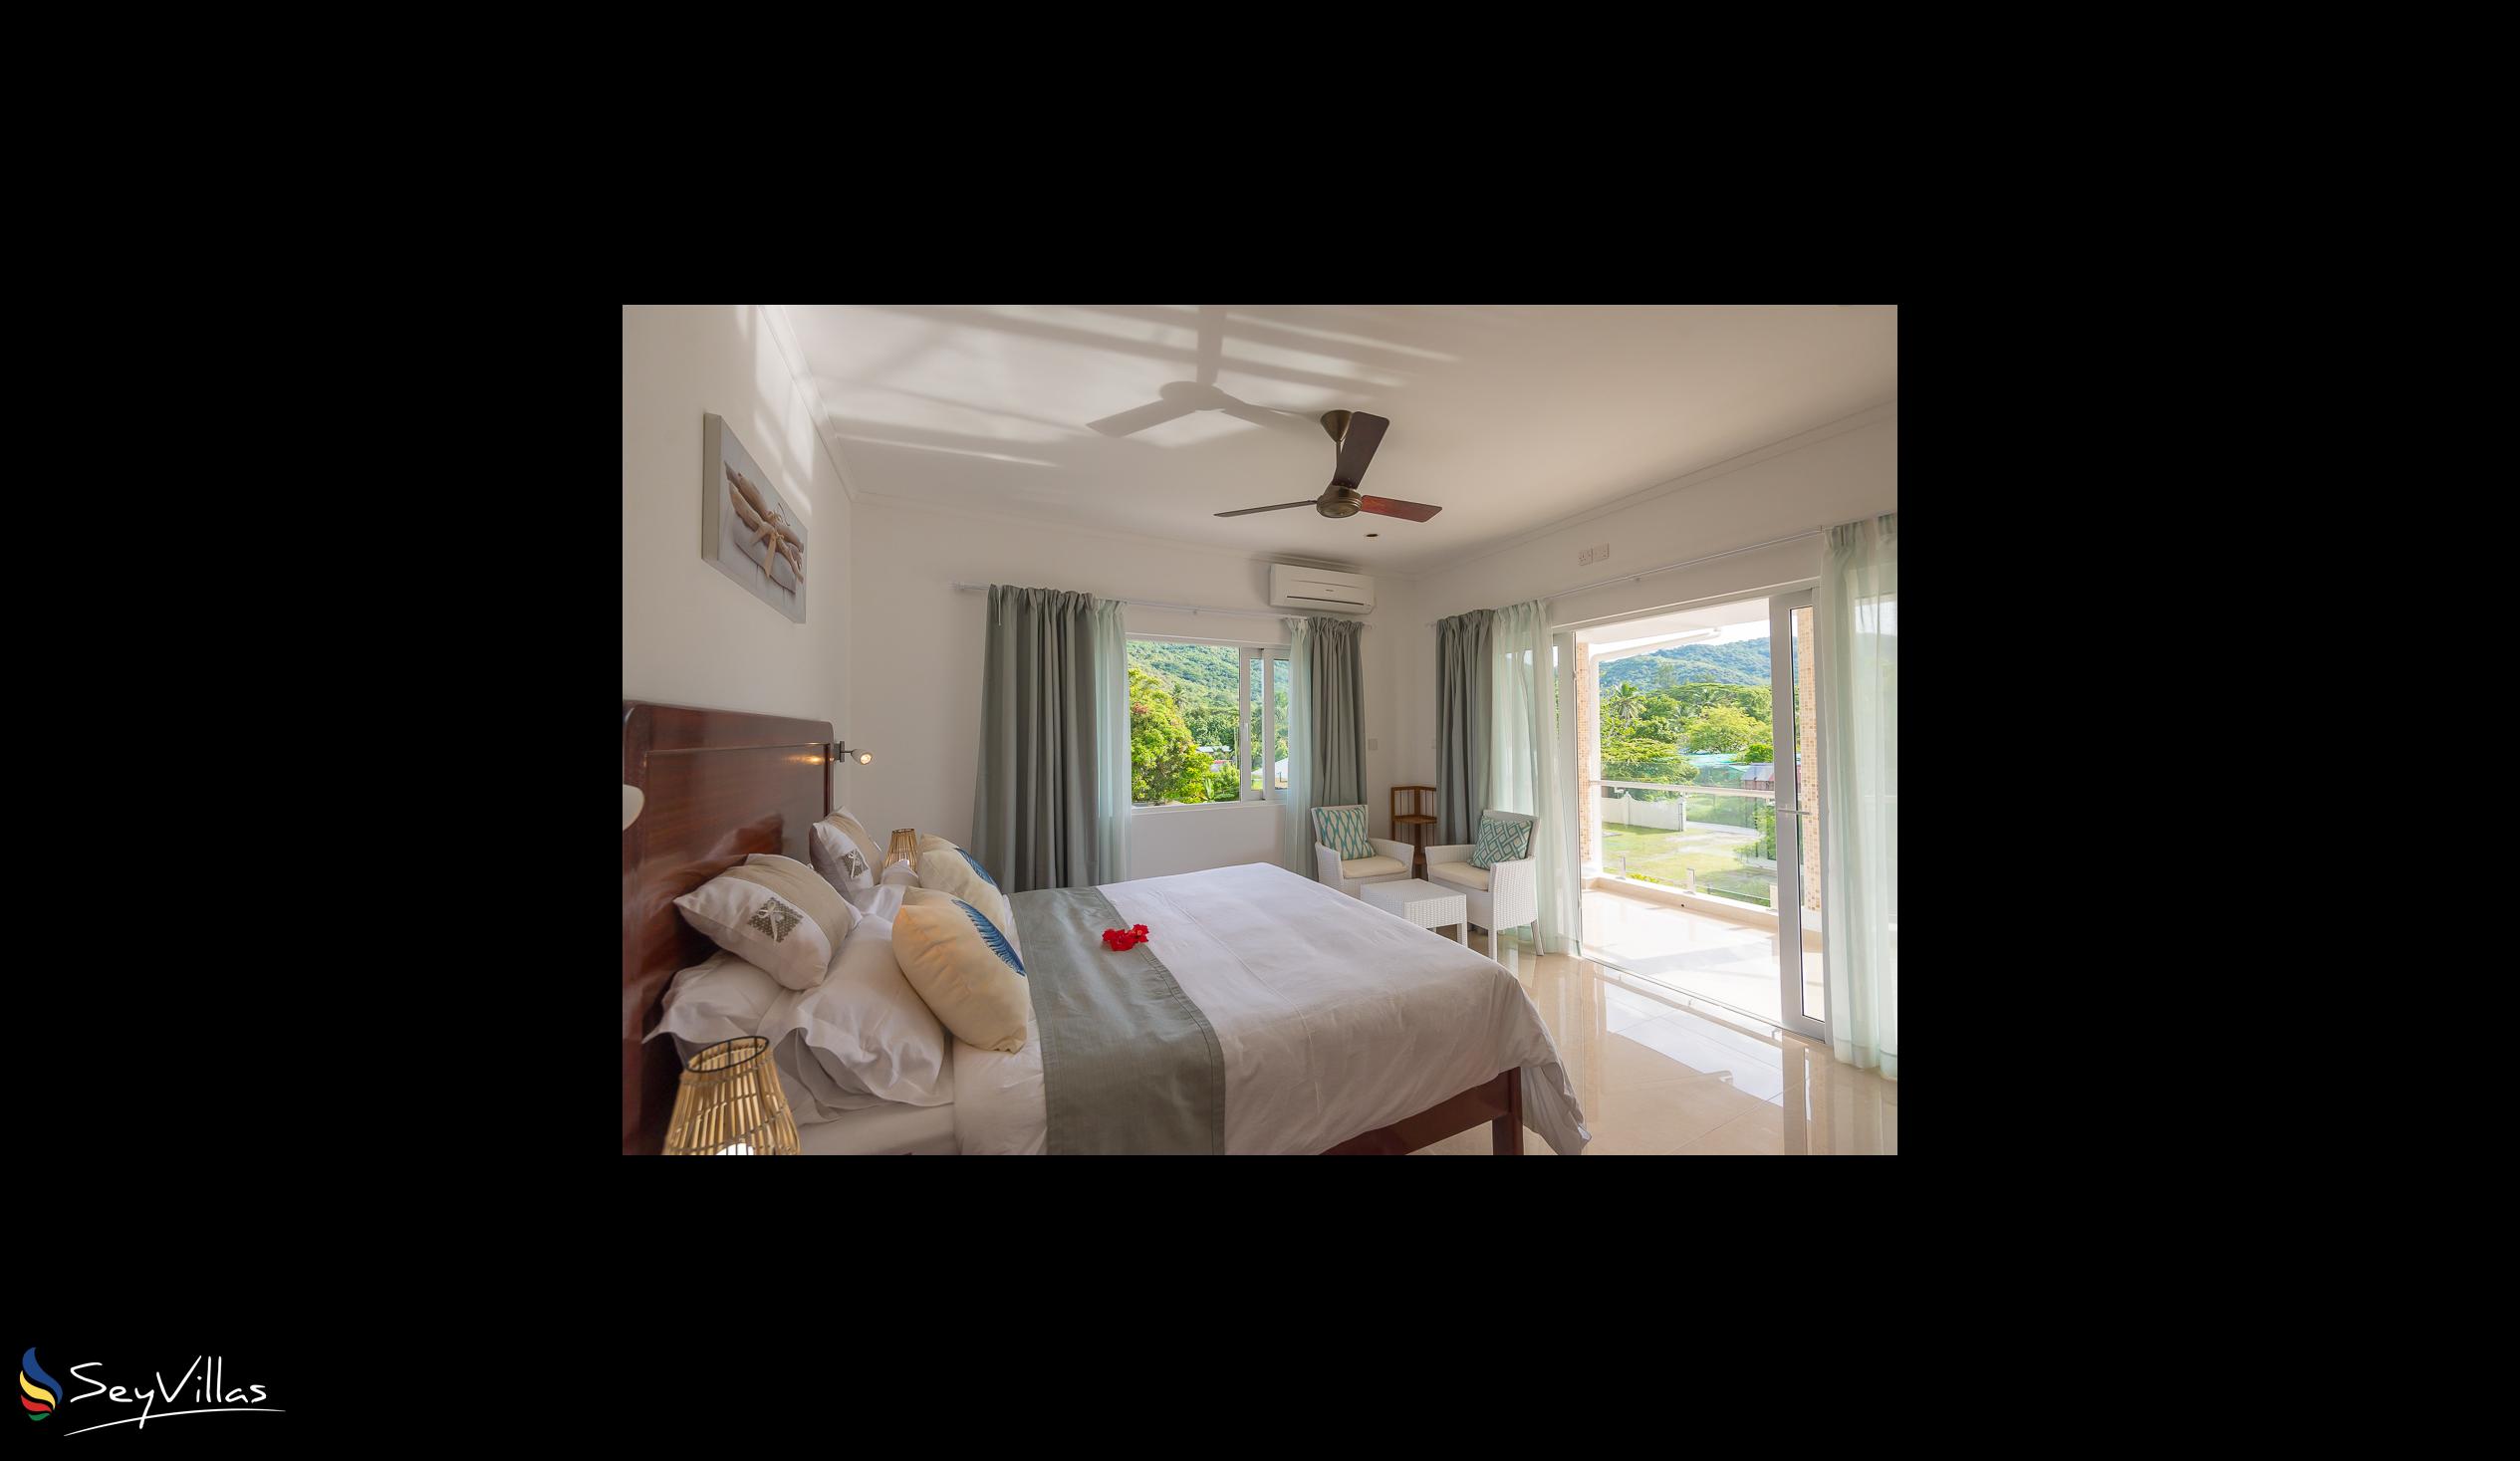 Foto 16: Tropic Villa Annex - Appartement pour adultes - Praslin (Seychelles)